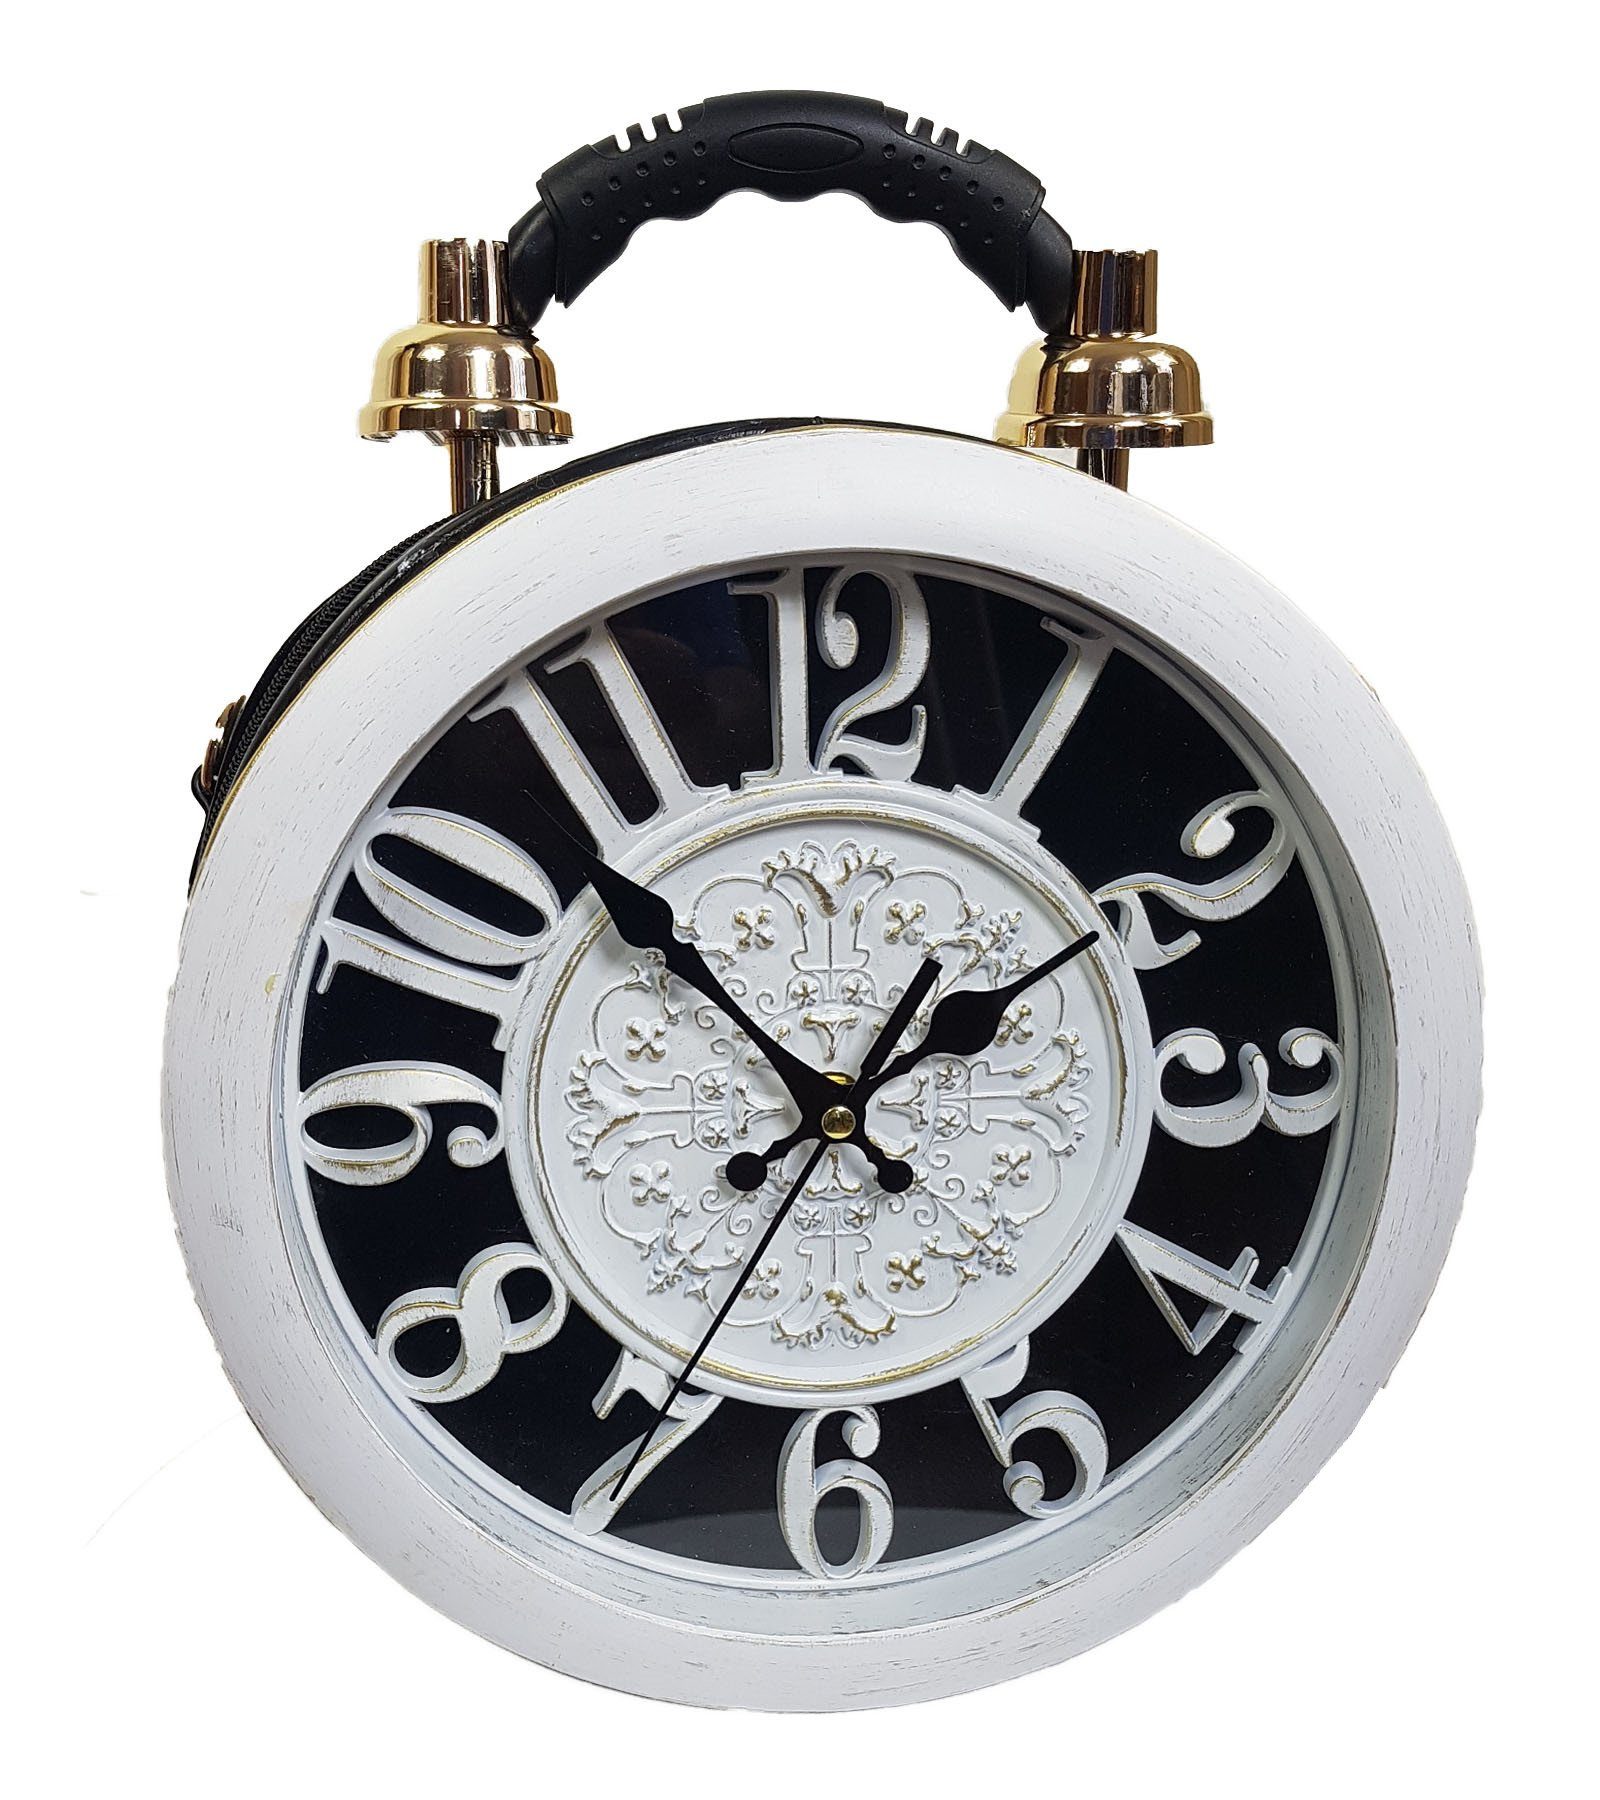 Einkaufszauber Handtasche Designer Handtasche mit echter Uhr Weiß, Echte Uhr auf der Vorderseite